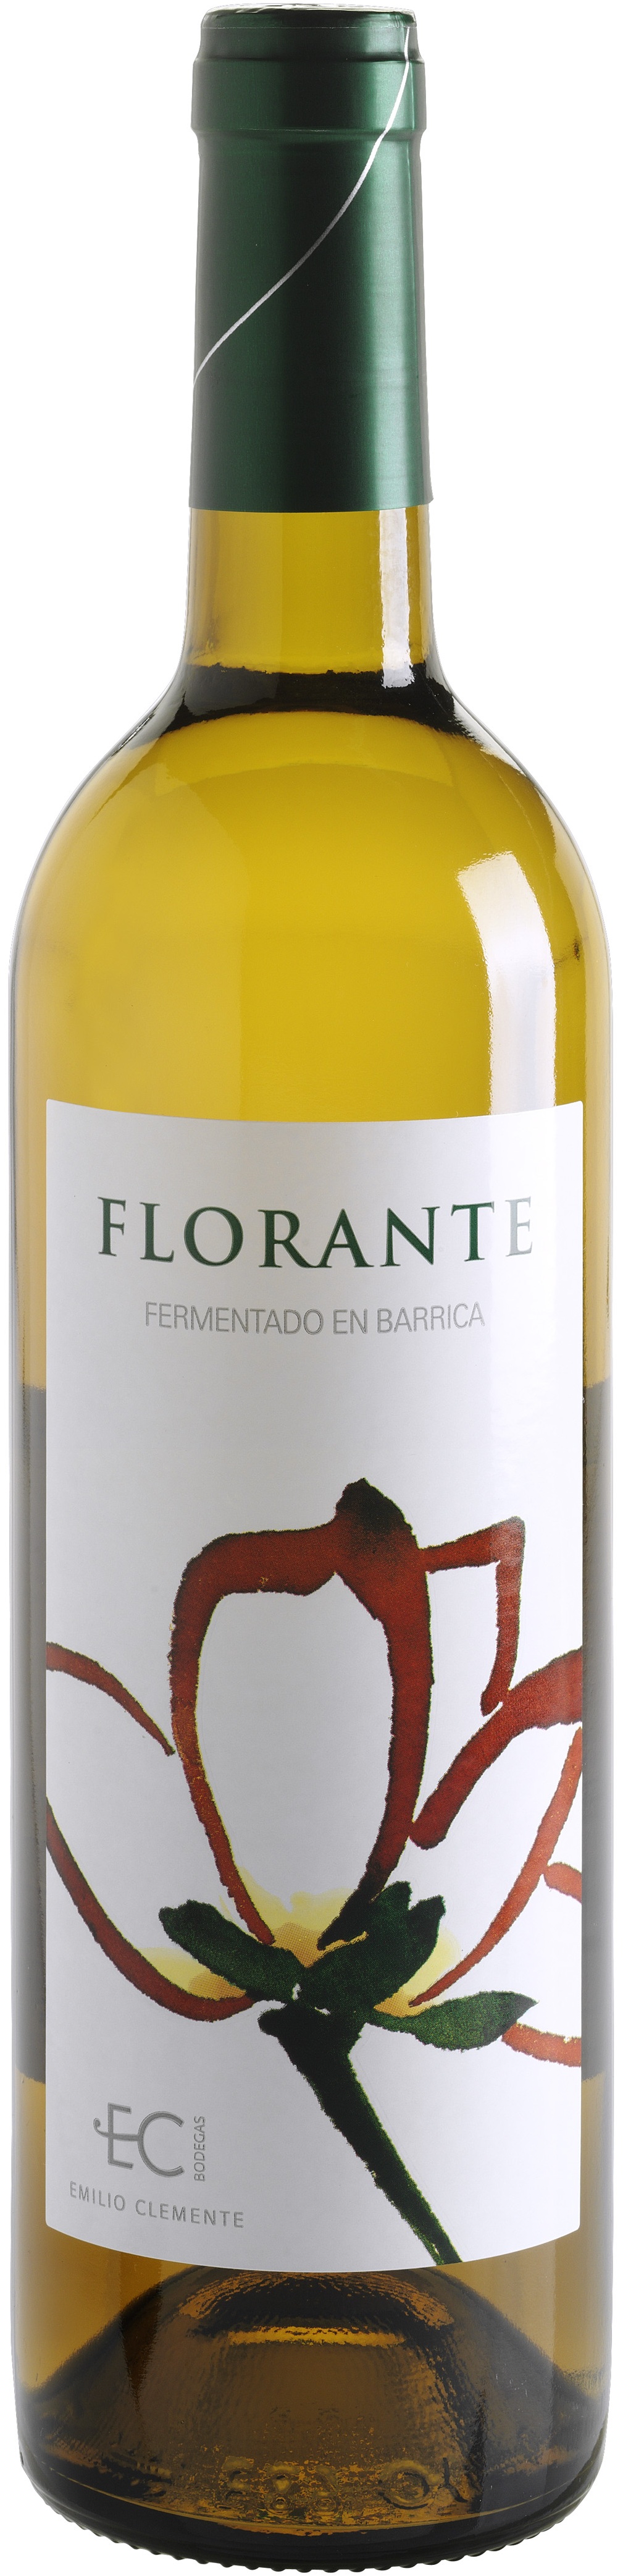 Logo Wine Florante Fermentado